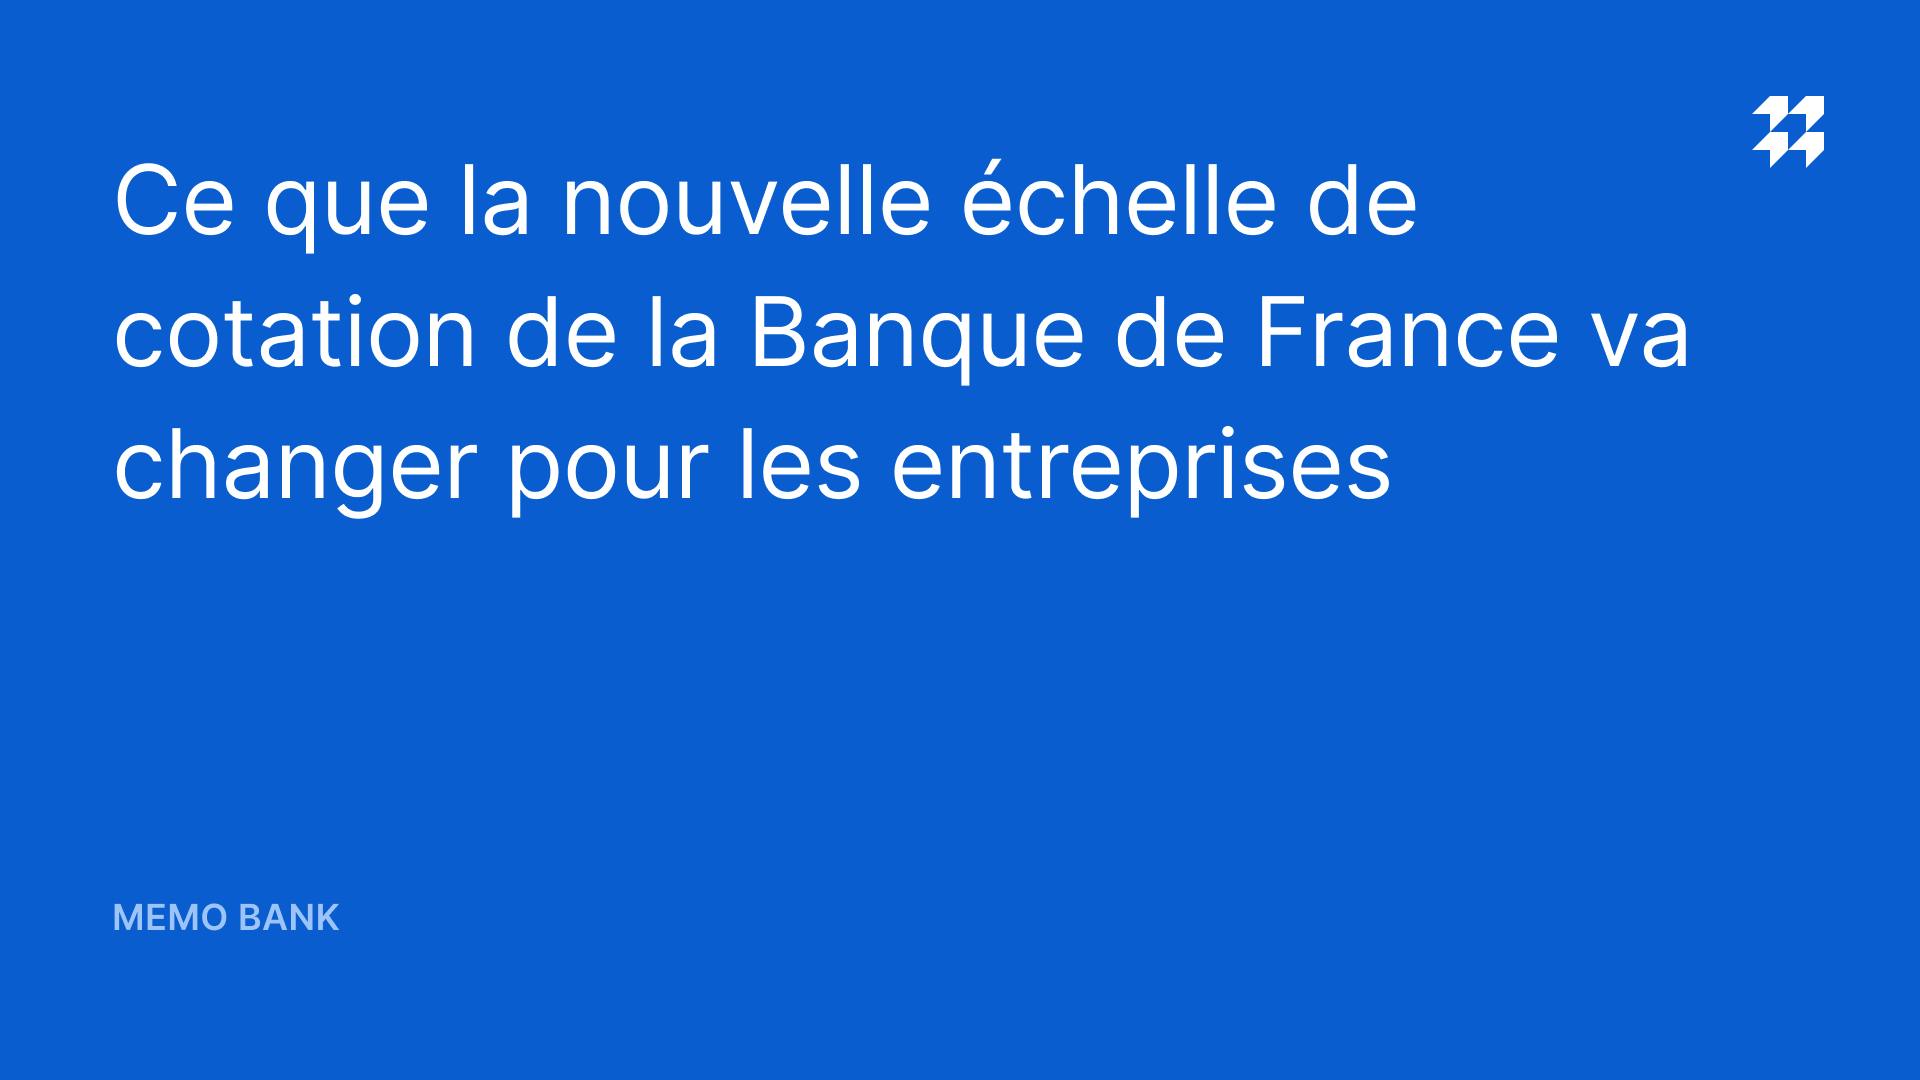 Ce Que La Nouvelle Echelle De Cotation De La Banque De France Va Changer Pour Les Entreprises Memo Bank